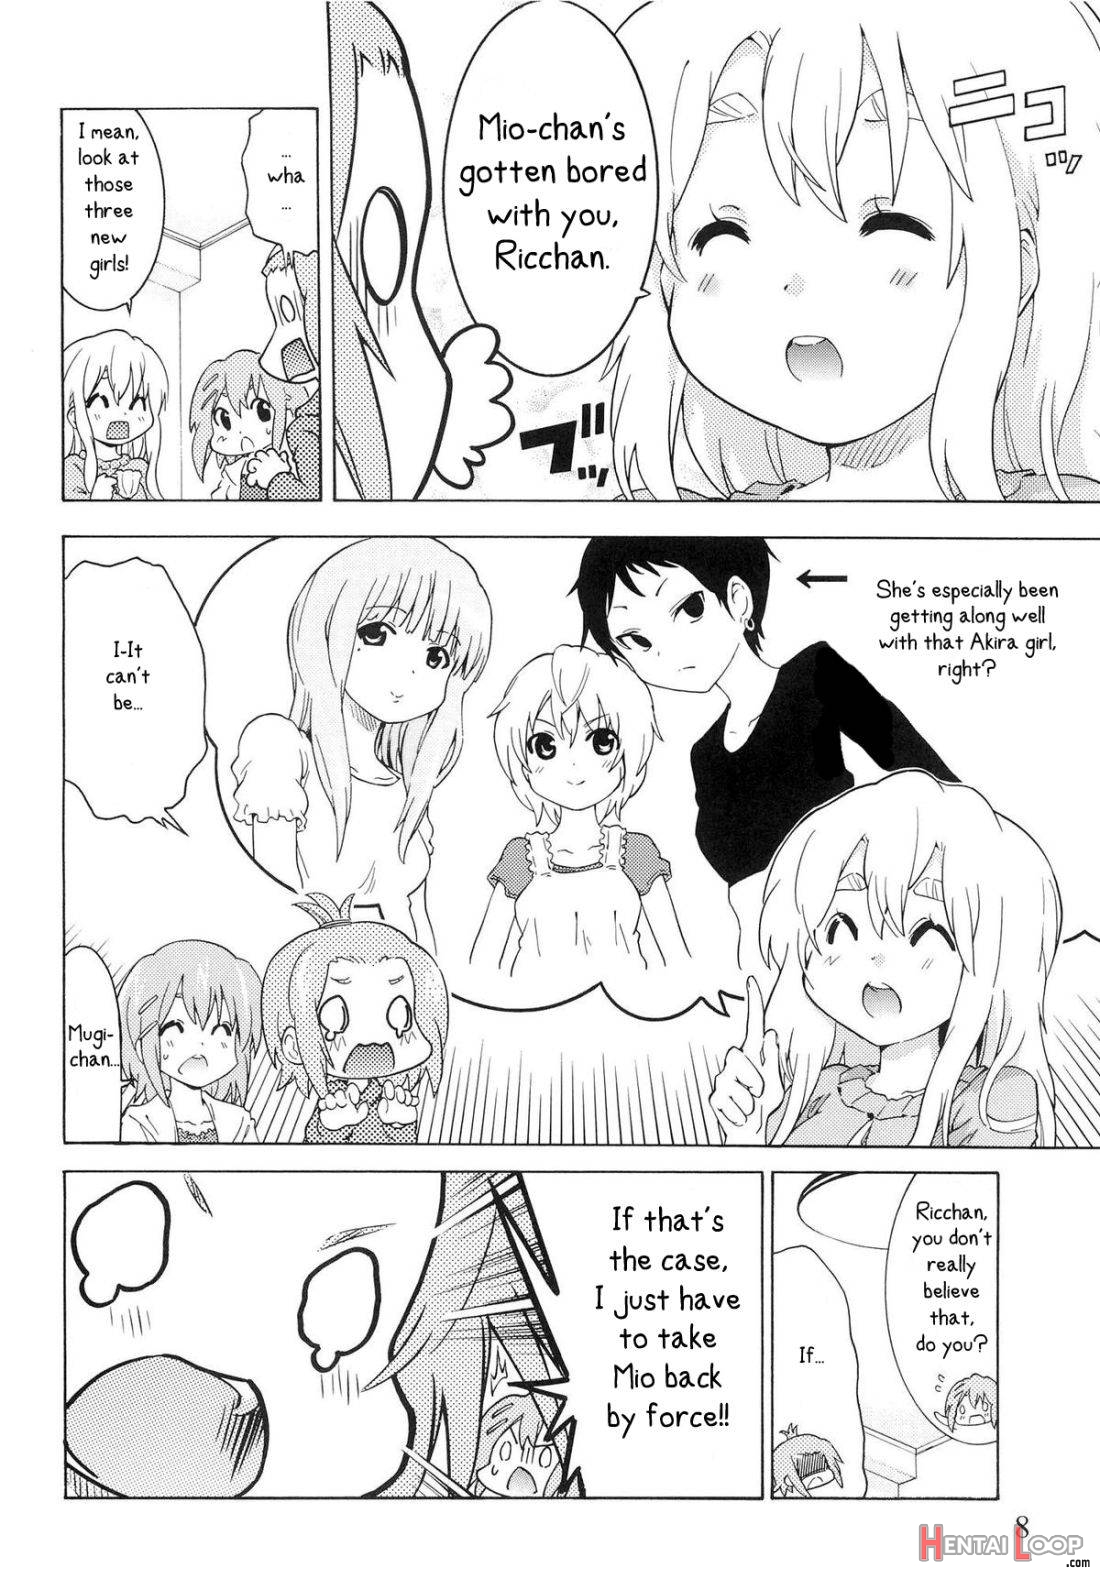 Yuri-on! #2 “kosokoso Mio-chan!” page 6